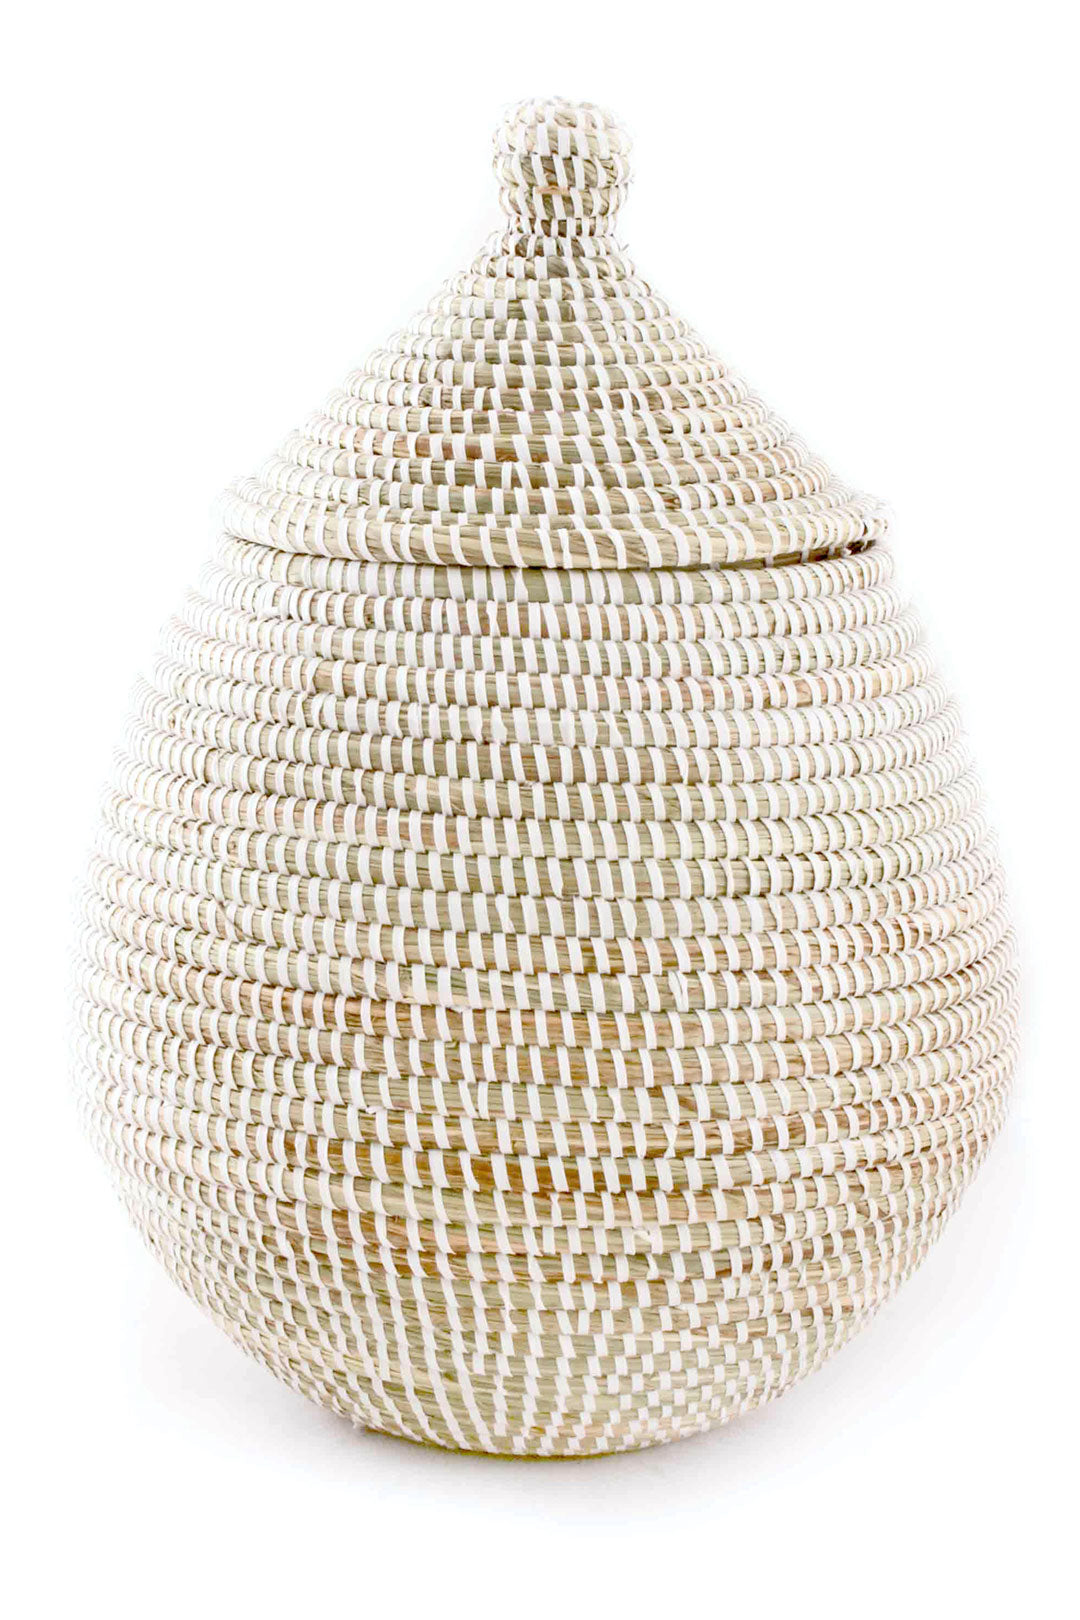 White Lidded African Gourd Basket Default Title